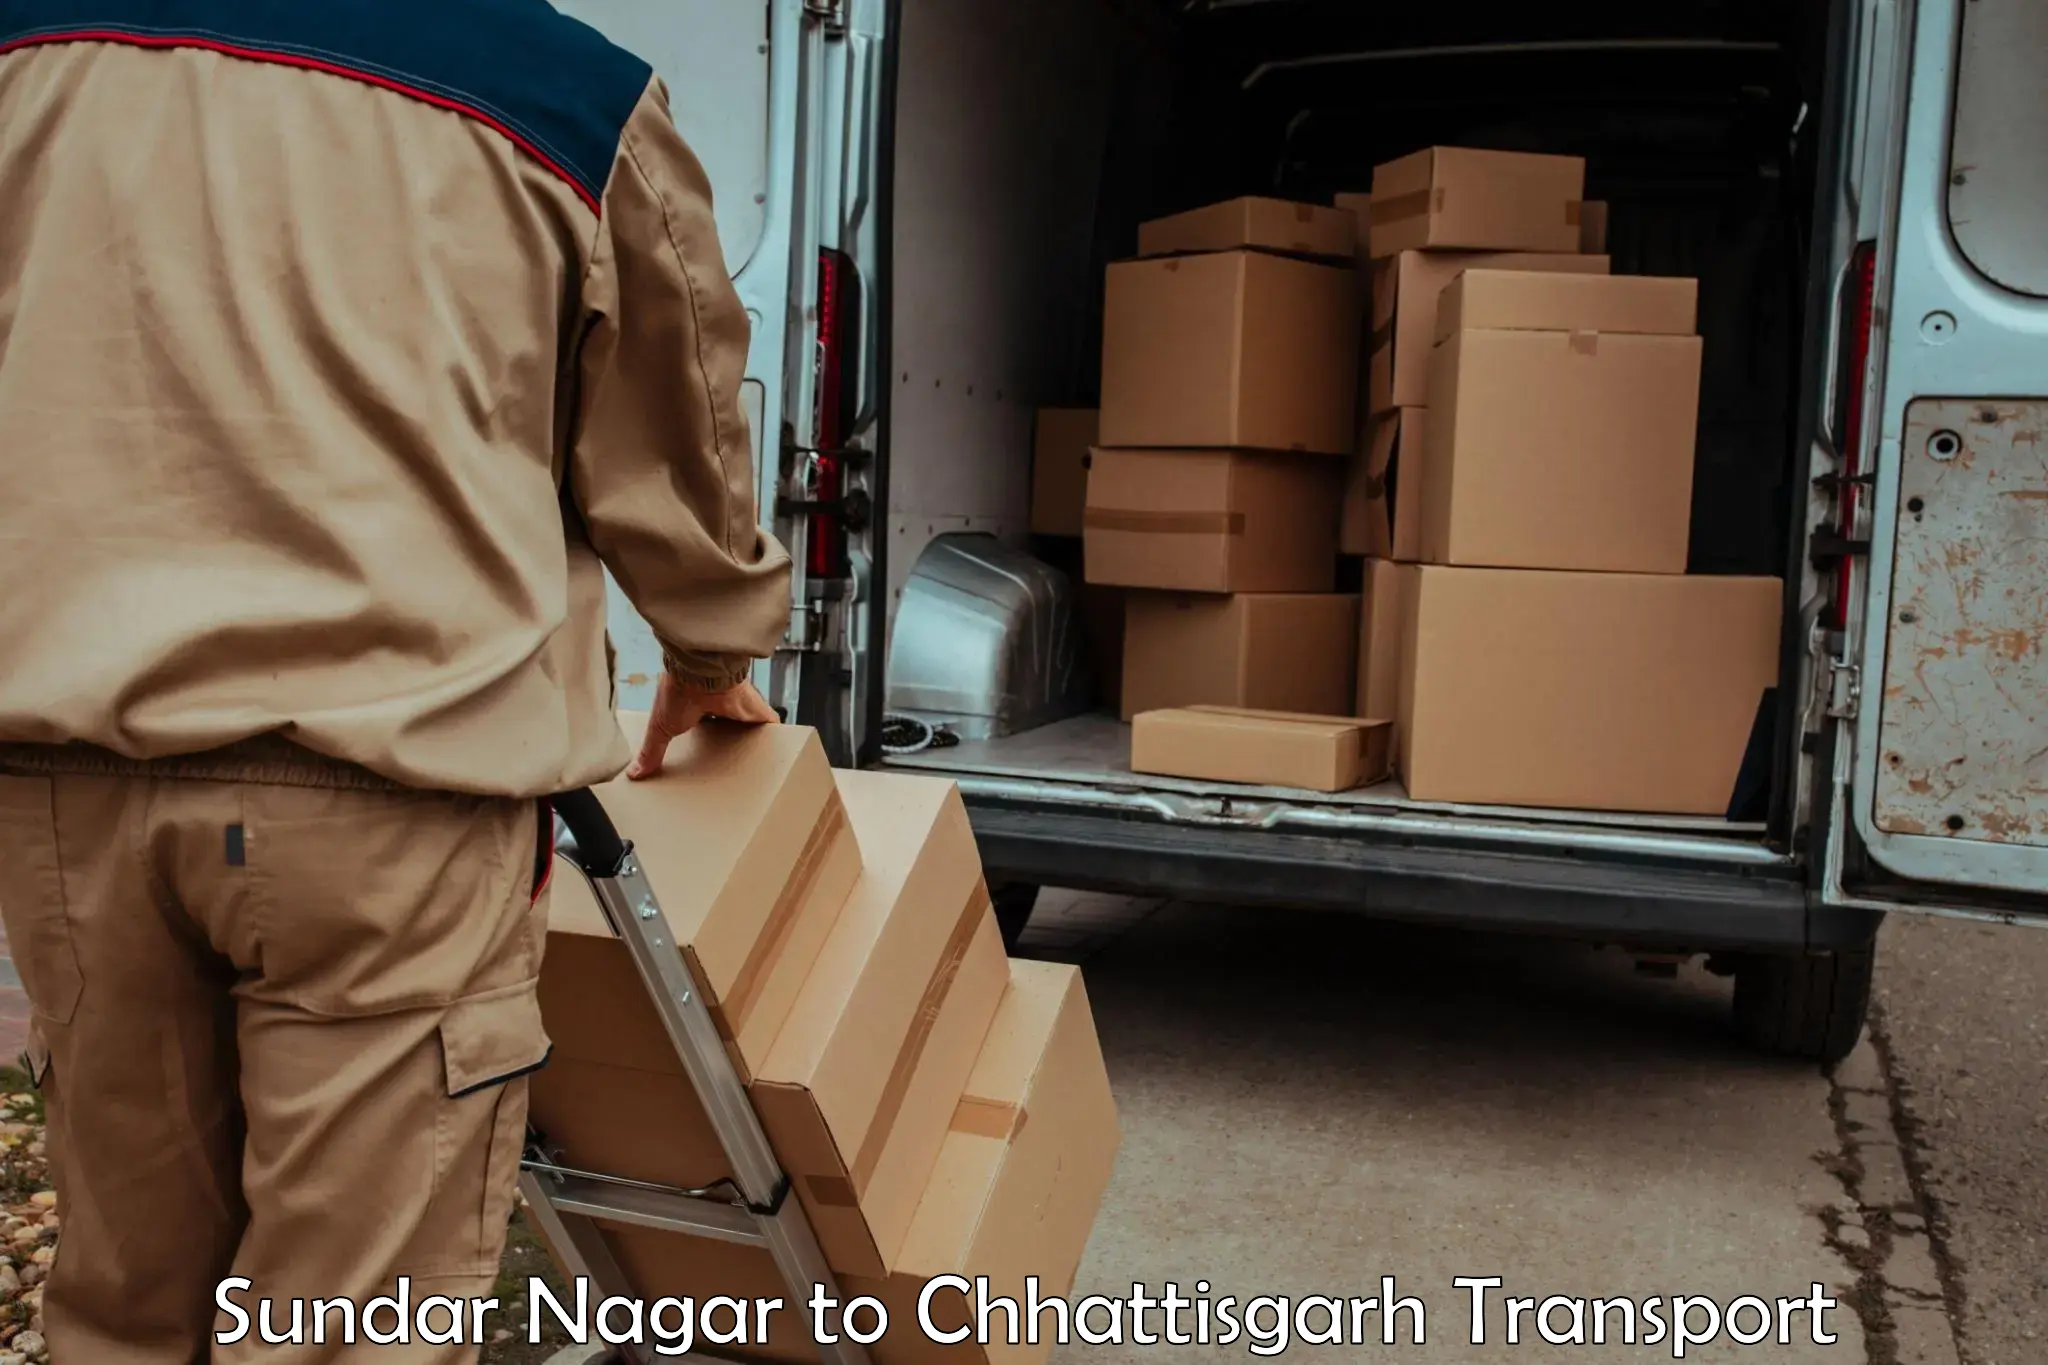 Logistics transportation services Sundar Nagar to Raigarh Chhattisgarh